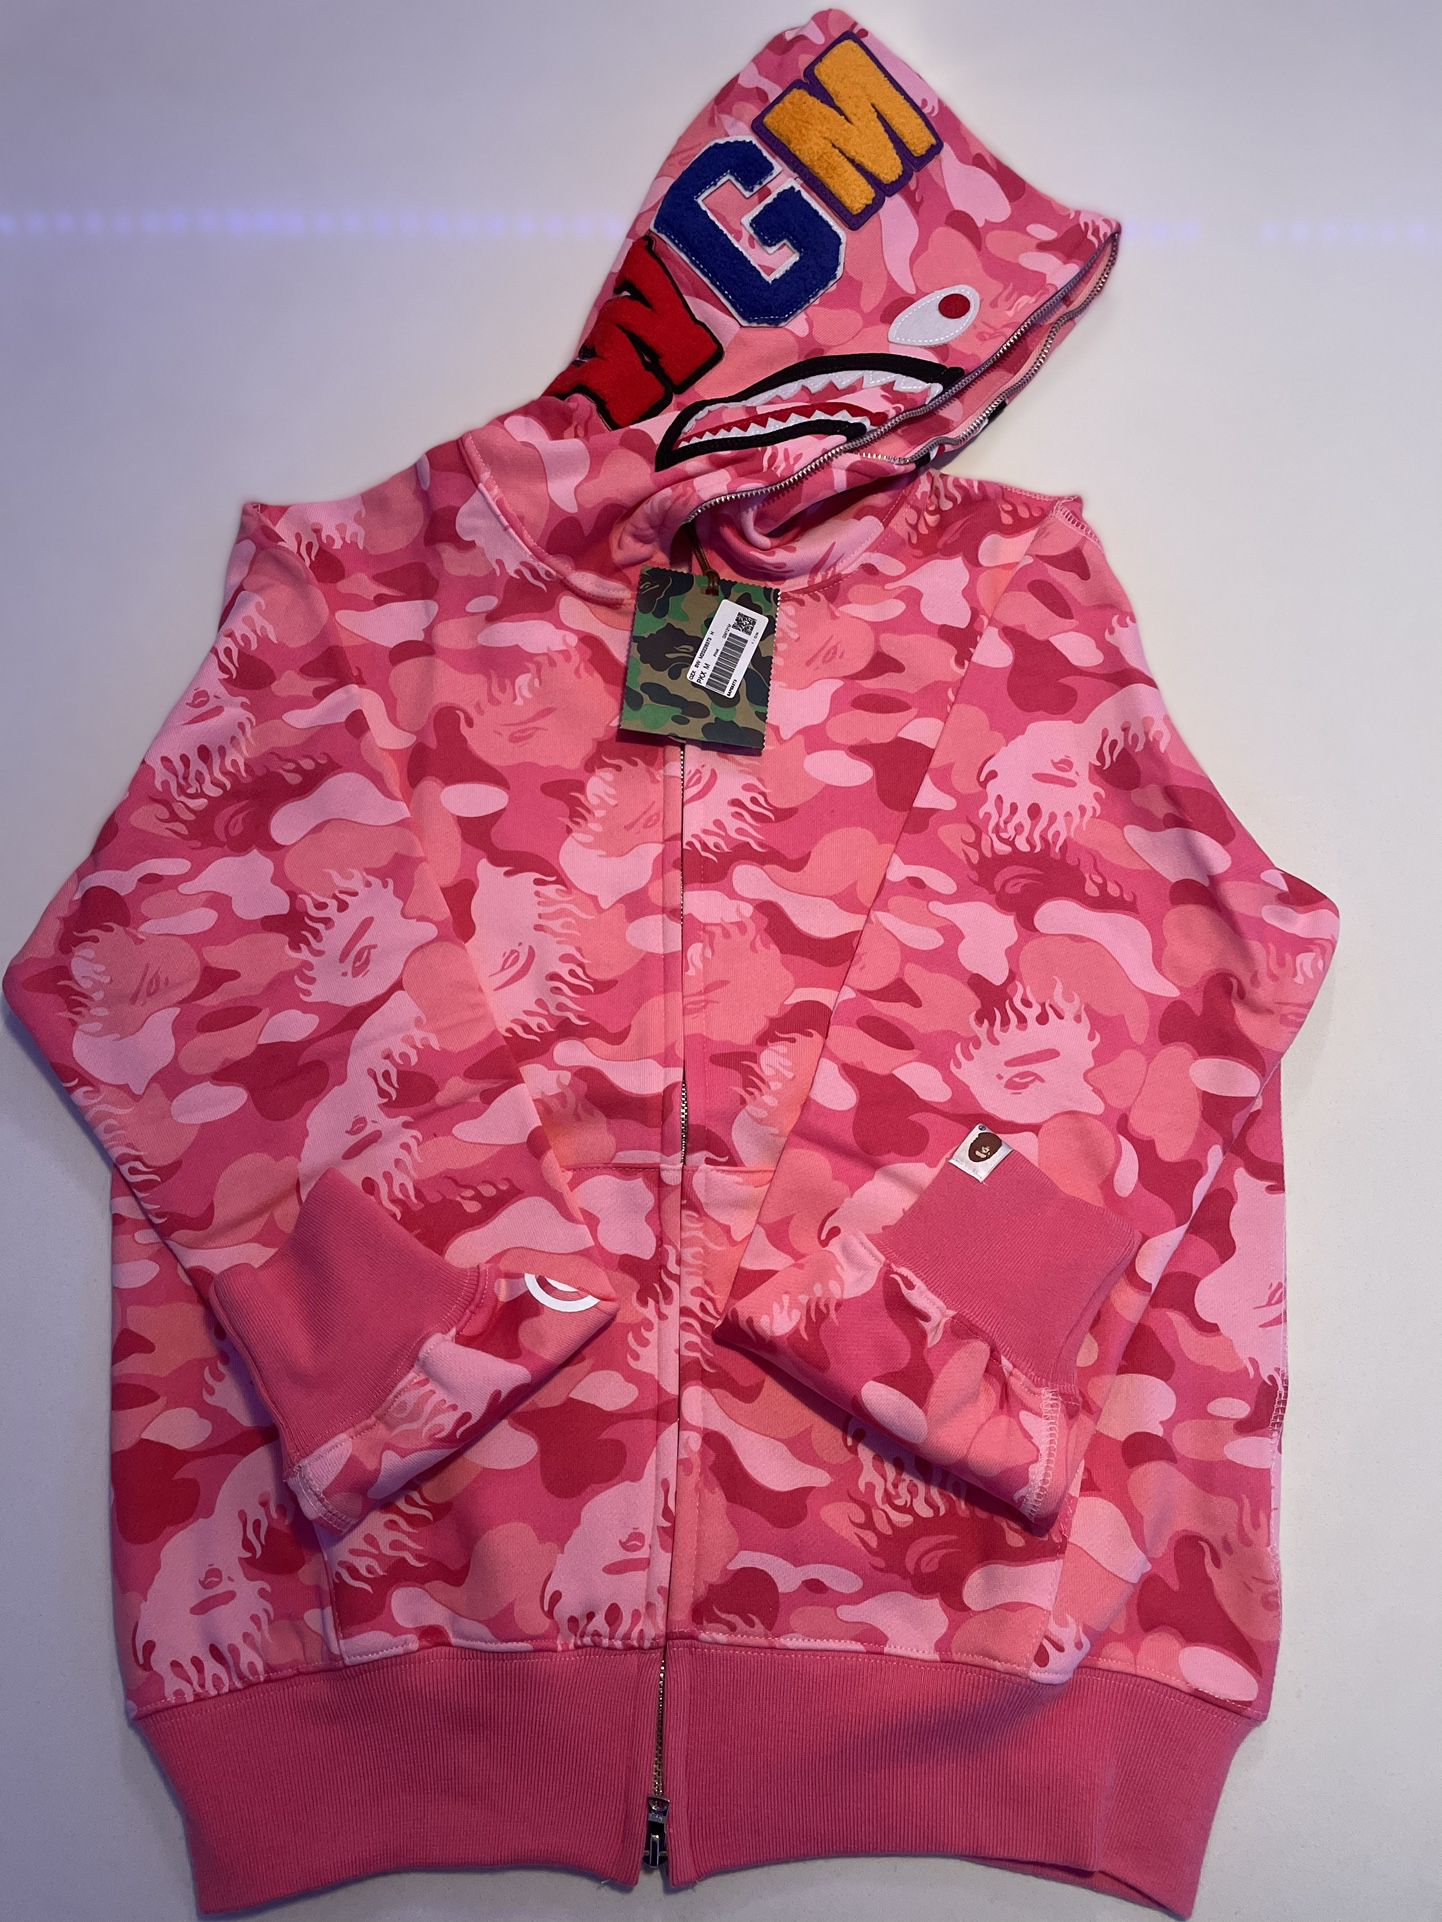 Full Zip Pink Bathing Ape Hoodie Brand New Size Medium $160